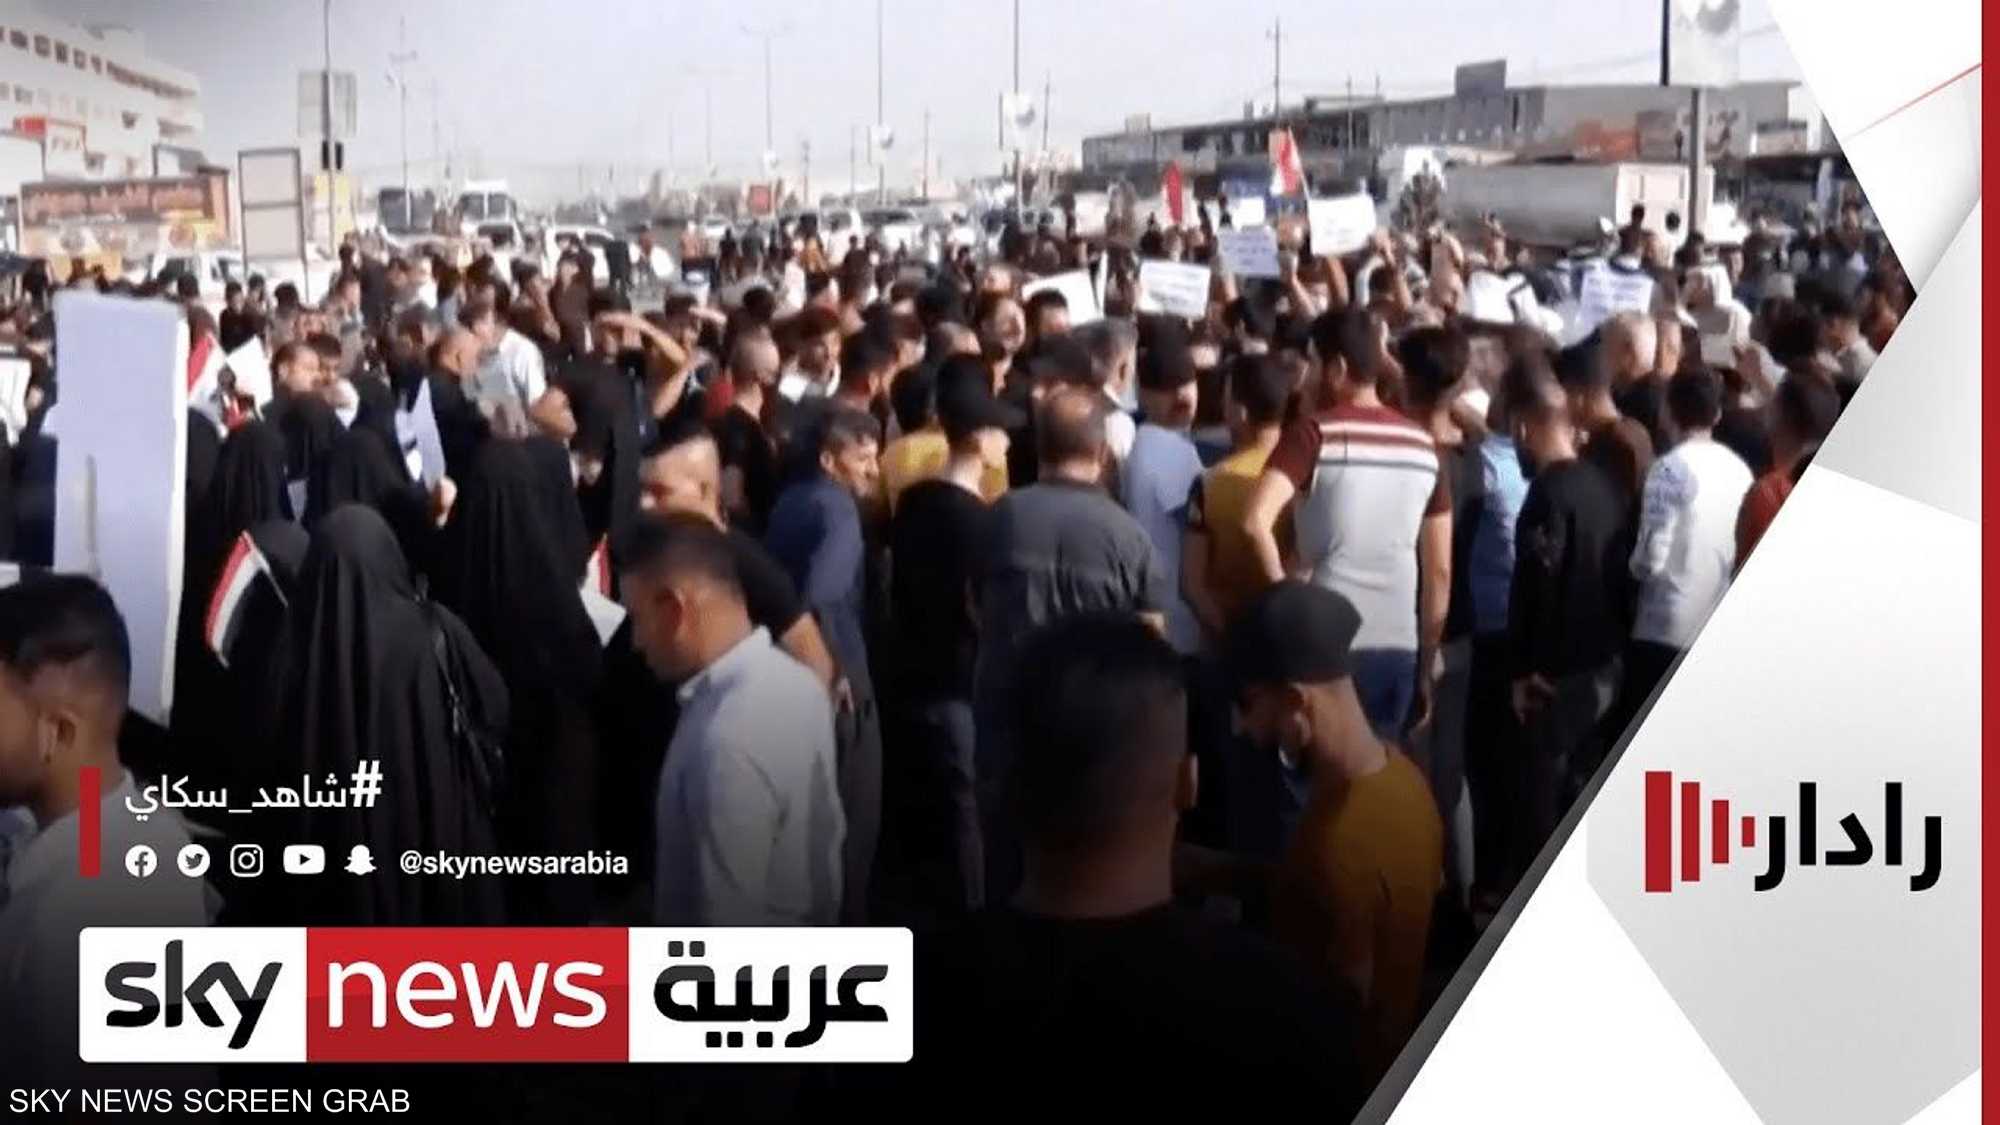 العراق..قوى سياسية تهدد بتأجيج الشارع رفضا لنتائج الانتخابات